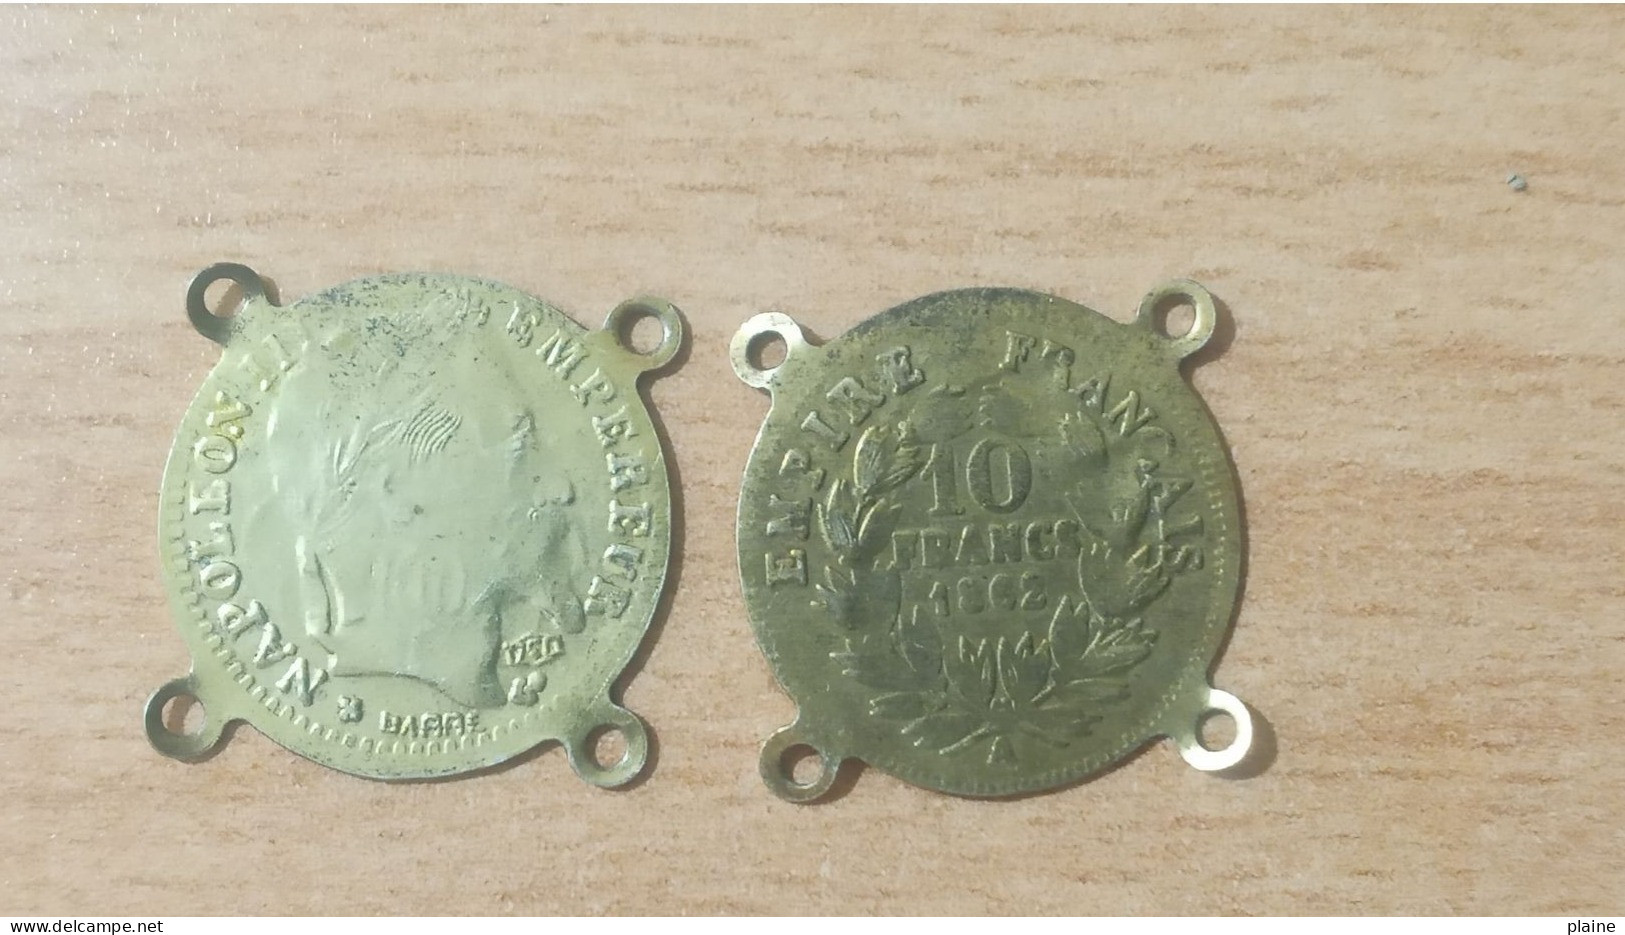 02 PIECES EN CUIVRES DE 10 FRANCS DE L'EMPIRE FRANCAIS-EMPEREUR NAPOLEON III-1862 - 10 Francs (gold)